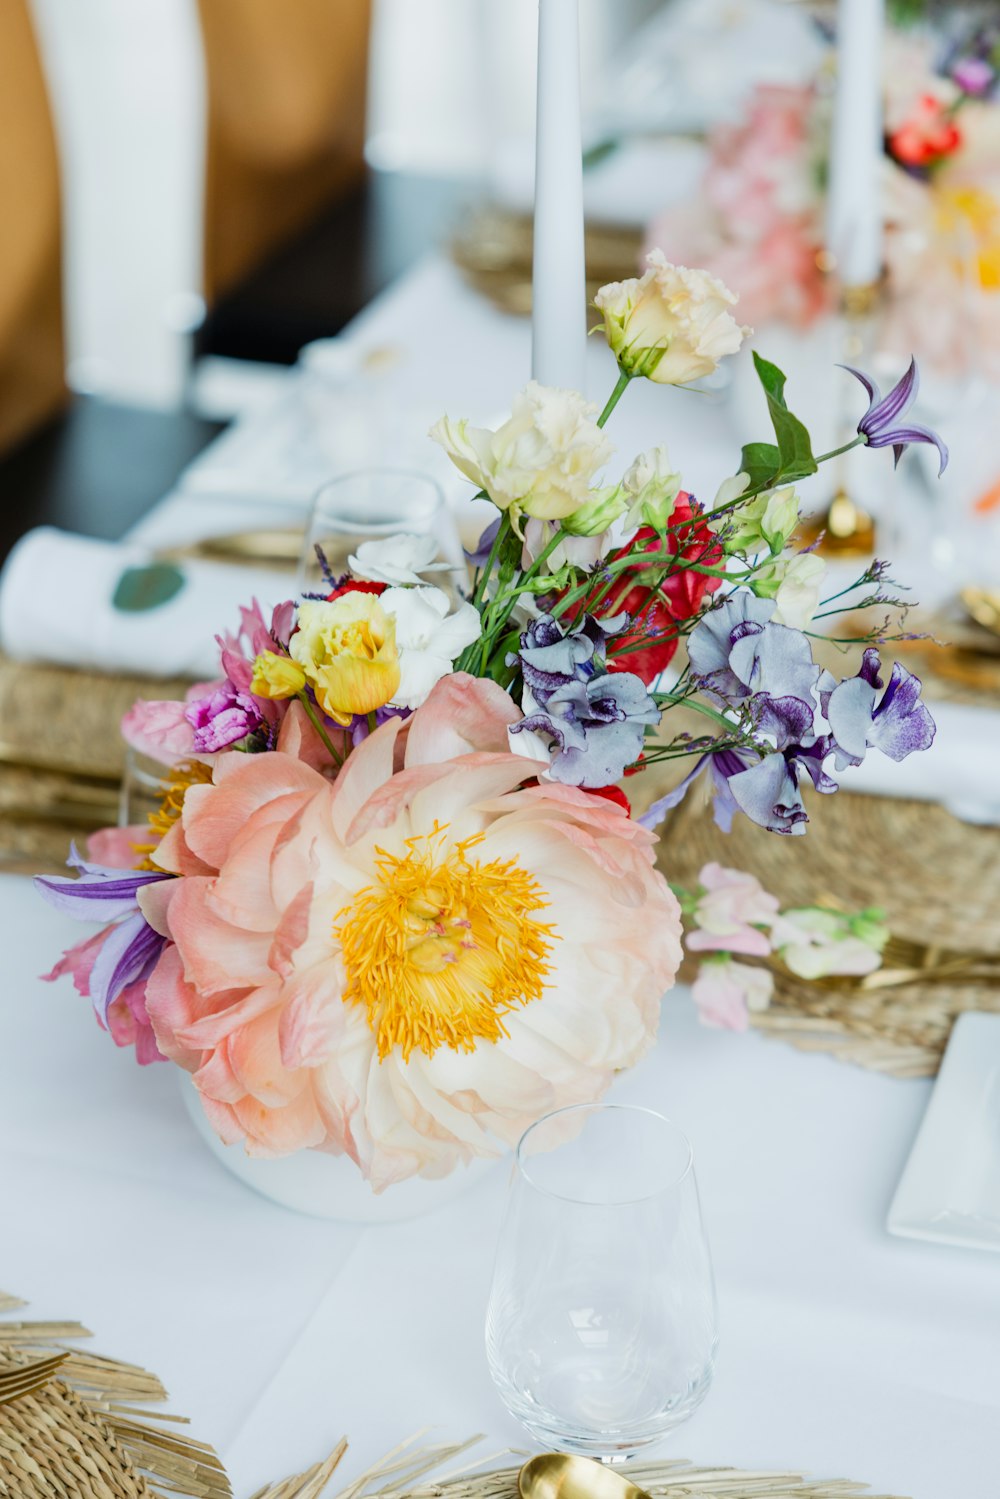 テーブルの上の花束